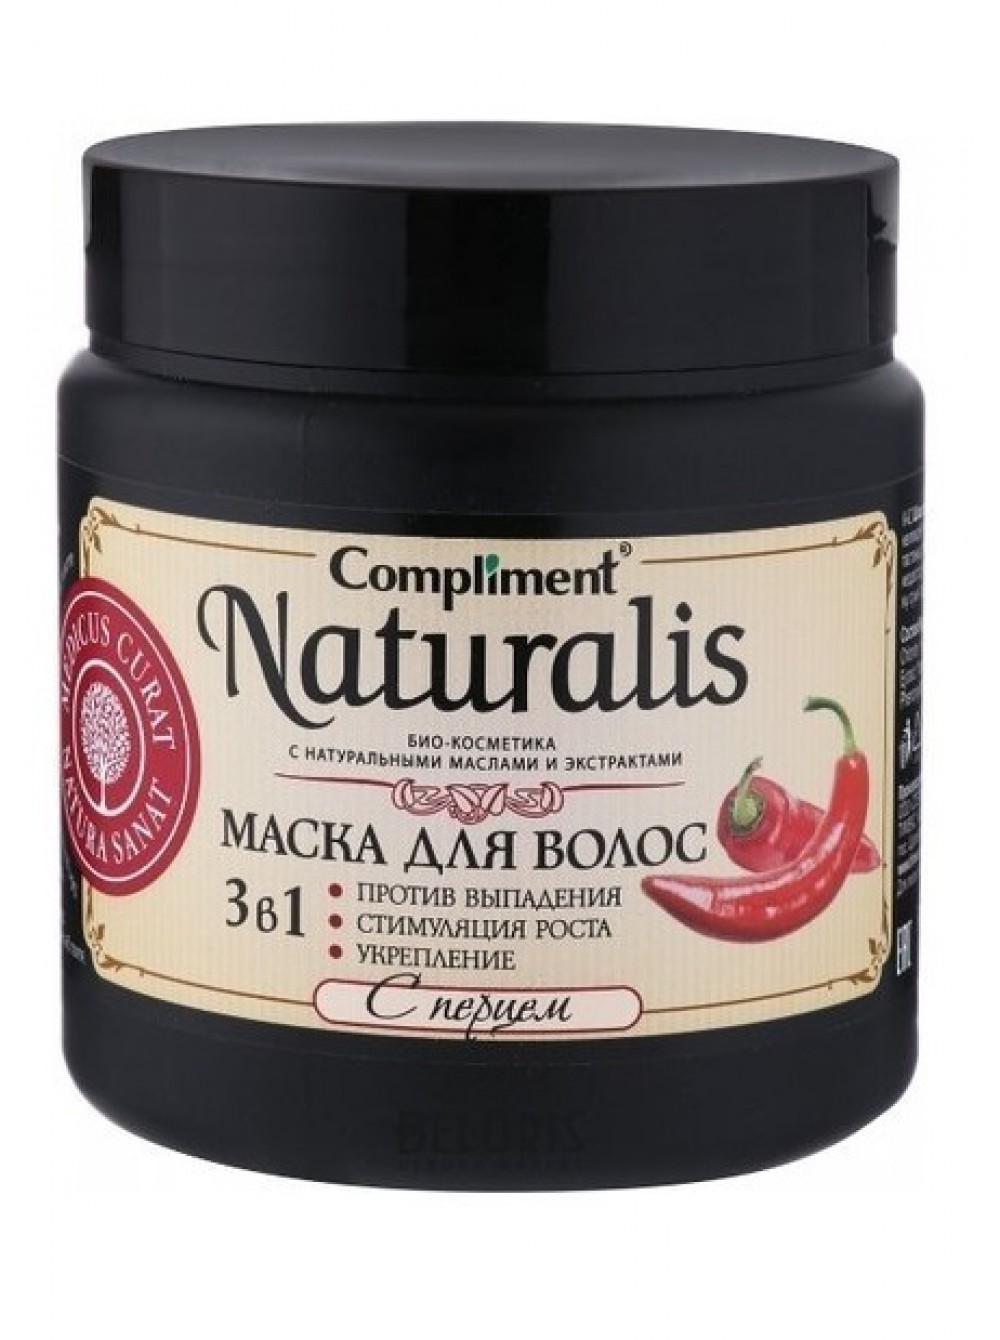 Перец маска для выпадения. Compliment Naturalis маска для волос 500мл с перцем. Compliment Naturalis 3 в 1 с перцем. Naturalis маска для волос 3в1. Маска для волос 3 в 1 с перцем Naturalis, 500.